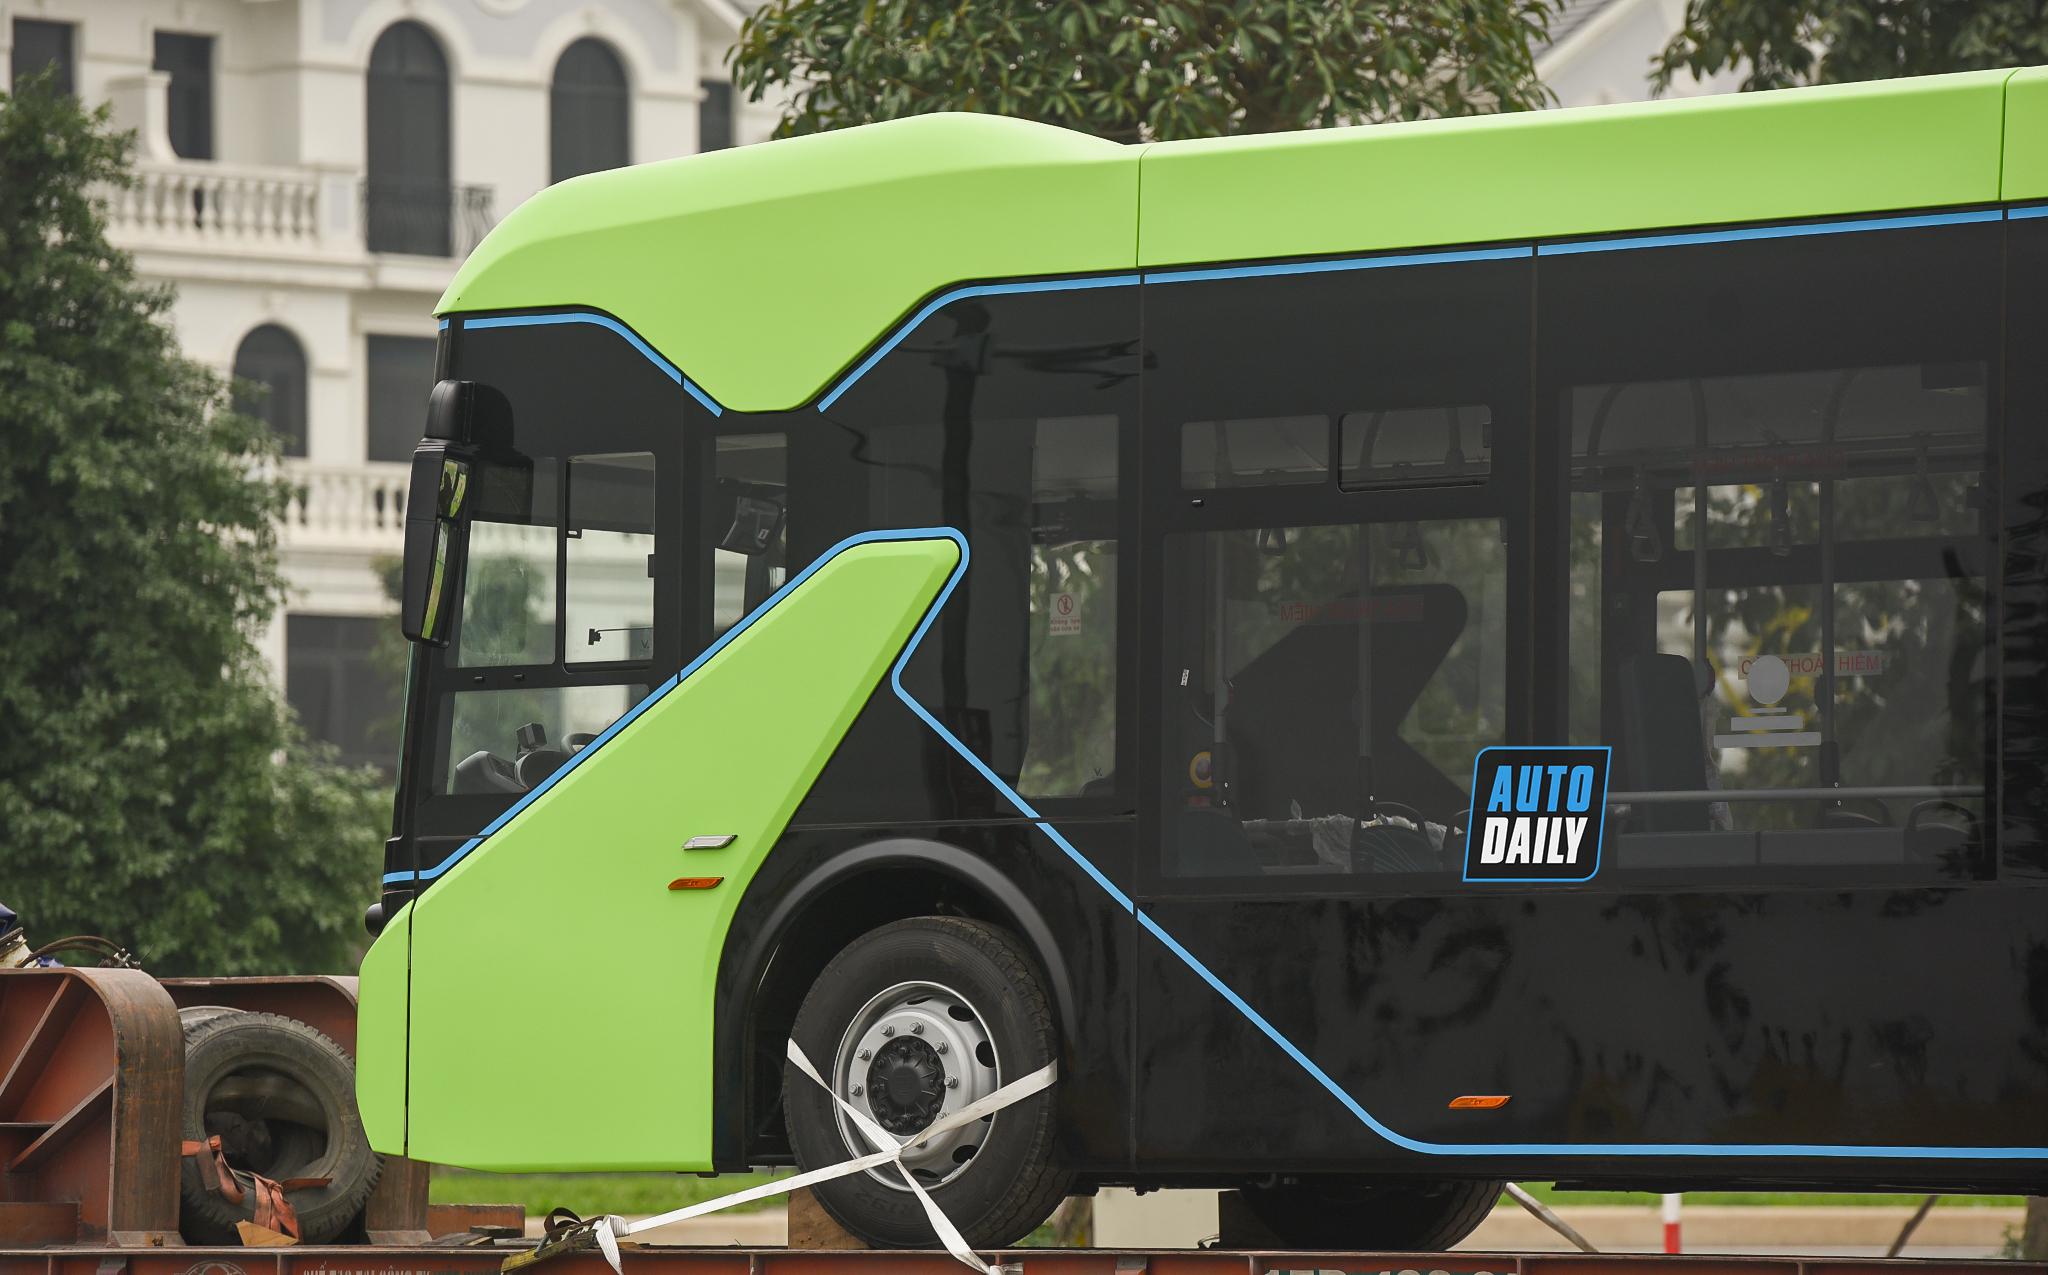 Chùm ảnh loạt xe Bus điện VinFast có mặt tại Hà Nội, sẵn sàng chạy thí điểm dsc-3870-copy.jpg